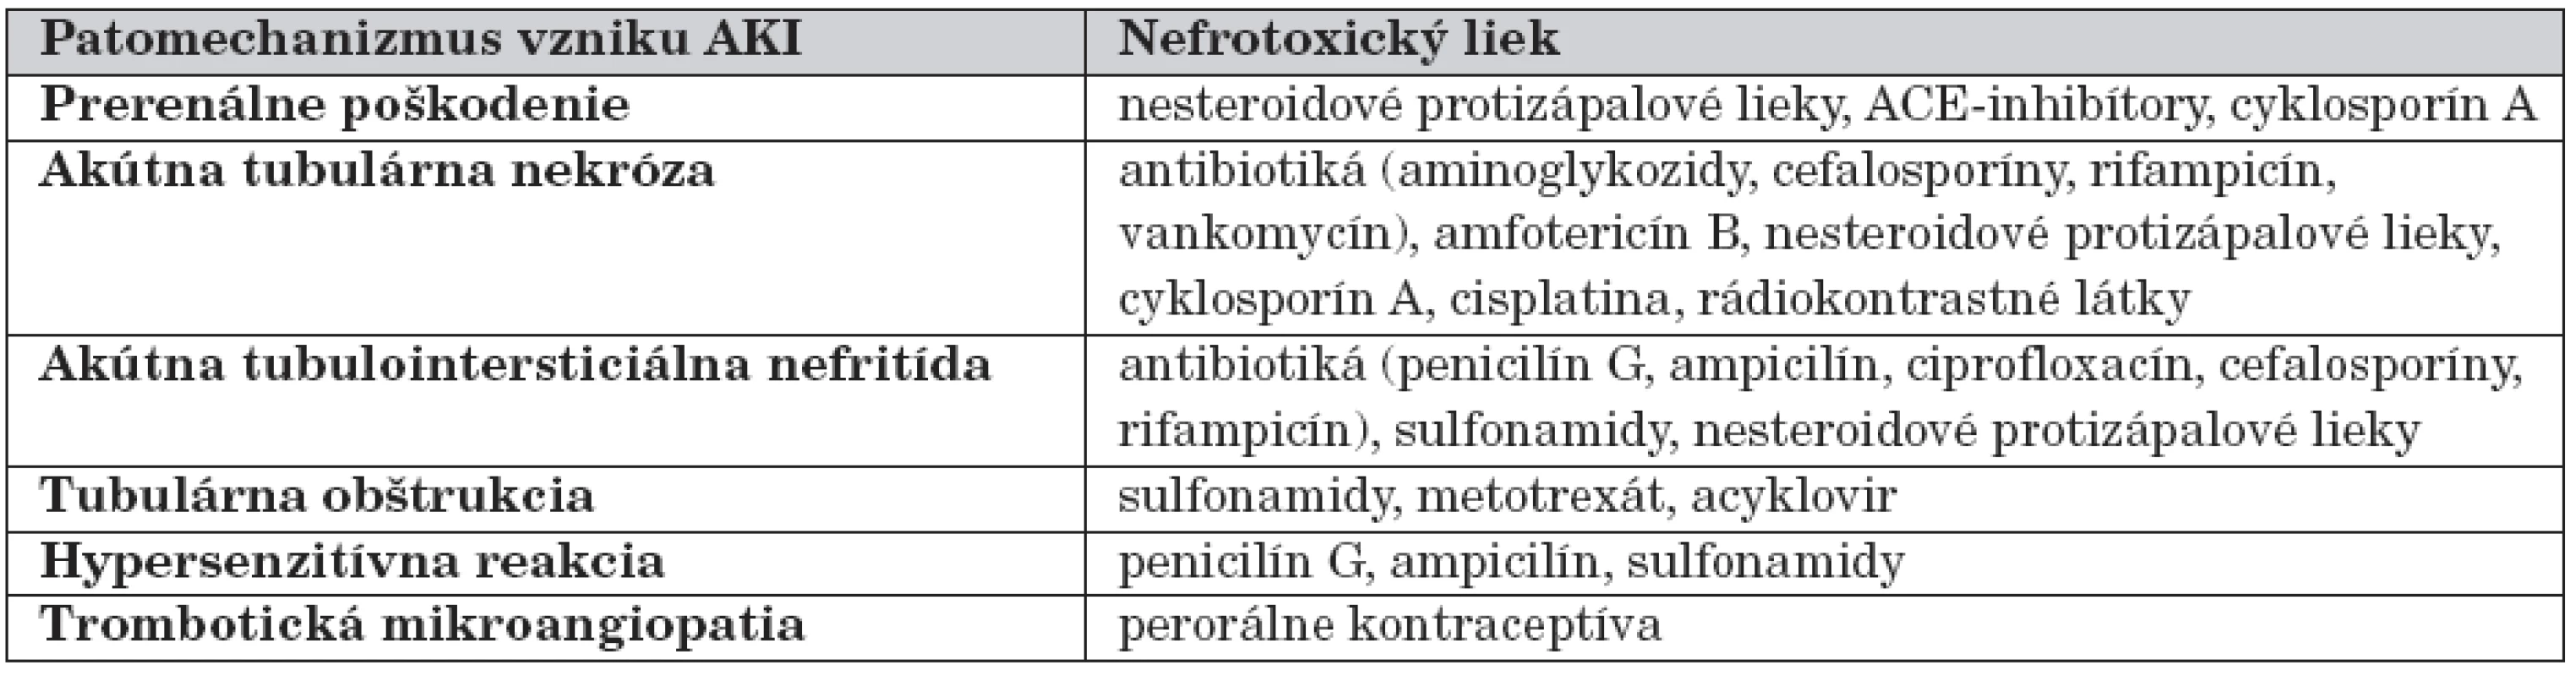 Najčastejšie (potenciálne) nefrotoxické lieky a patomechanizmus ich pôsobenia [15].